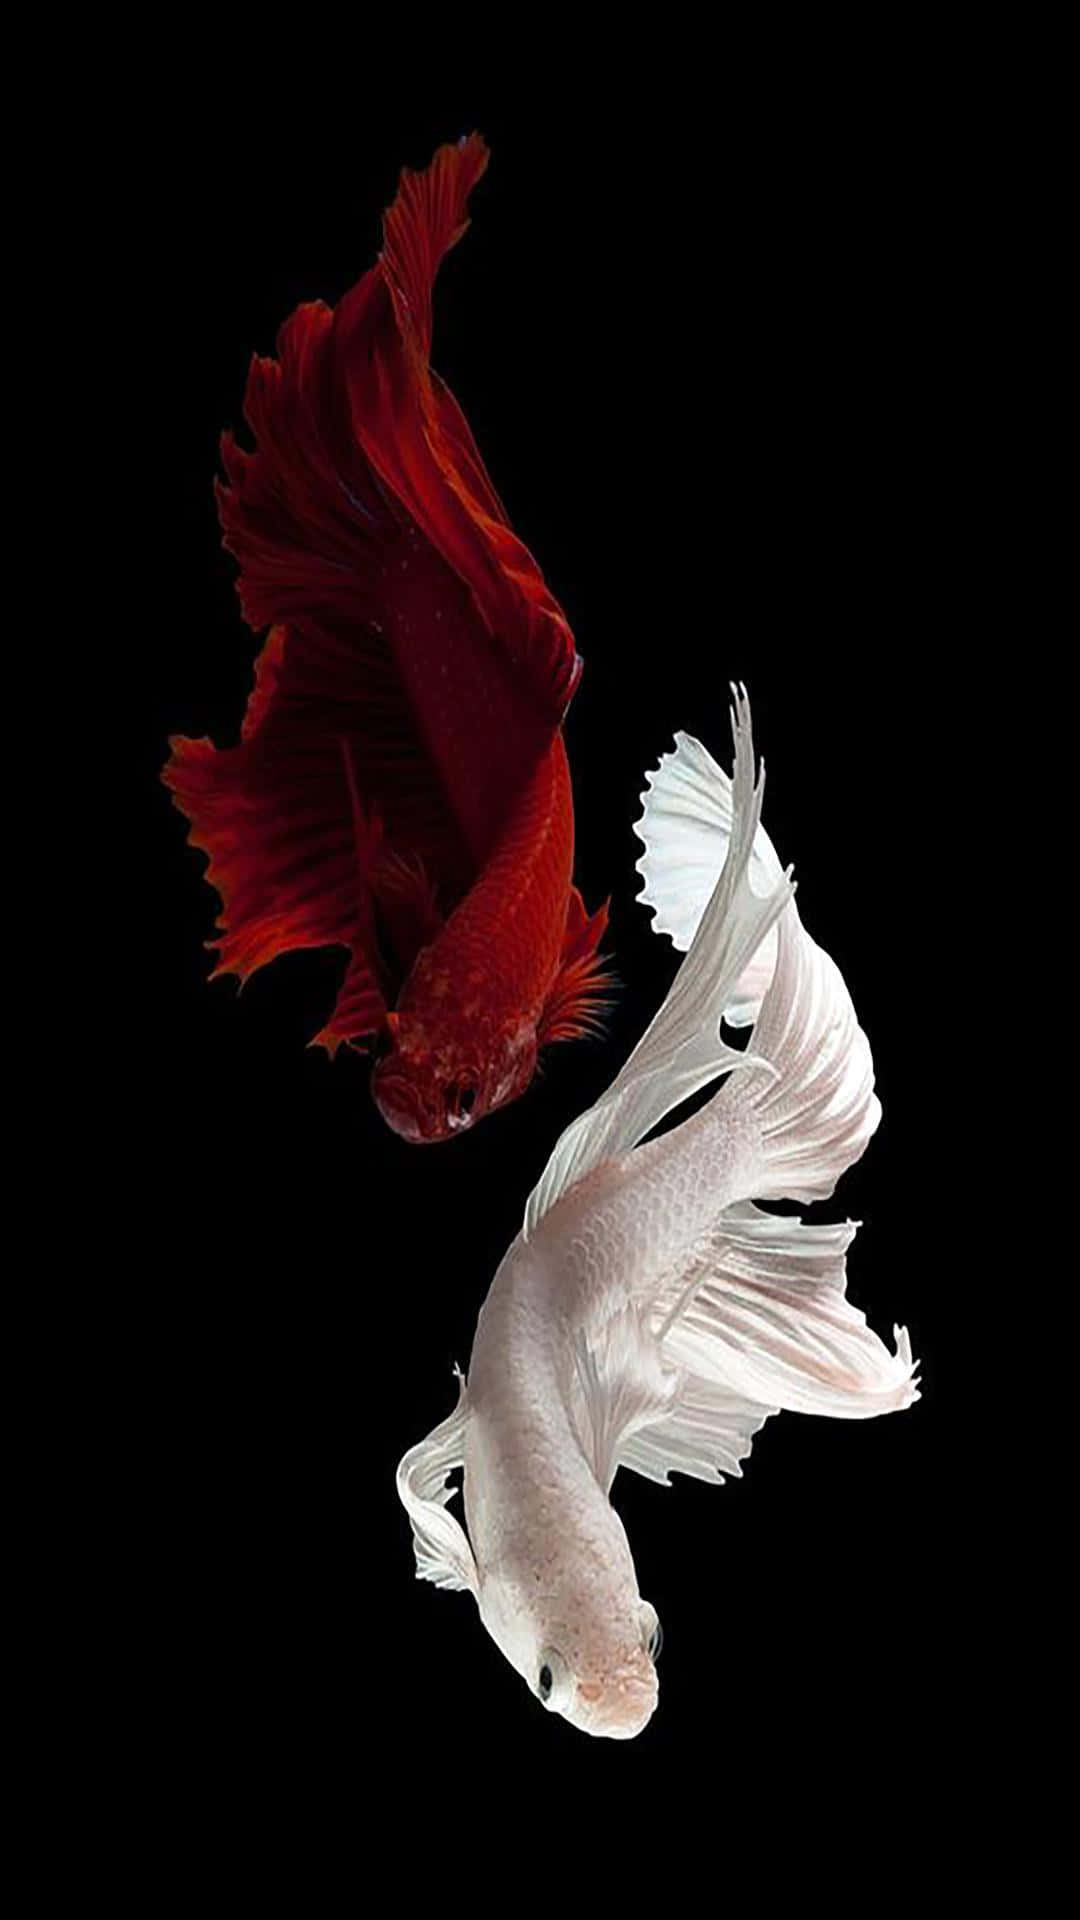 Redand White Betta Fish Dance Wallpaper